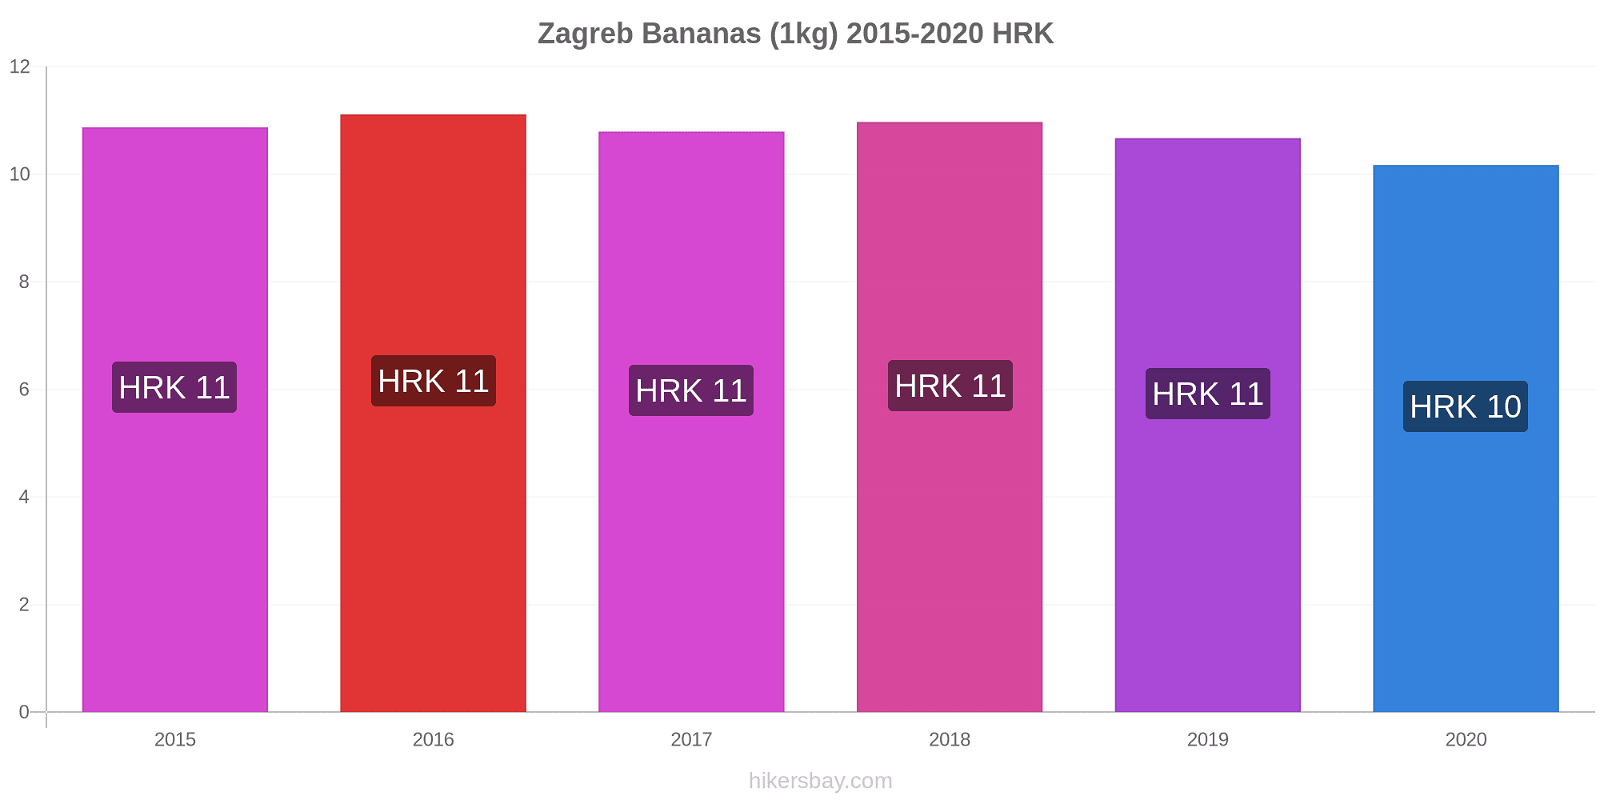 Zagreb variação de preço Banana (1kg) hikersbay.com